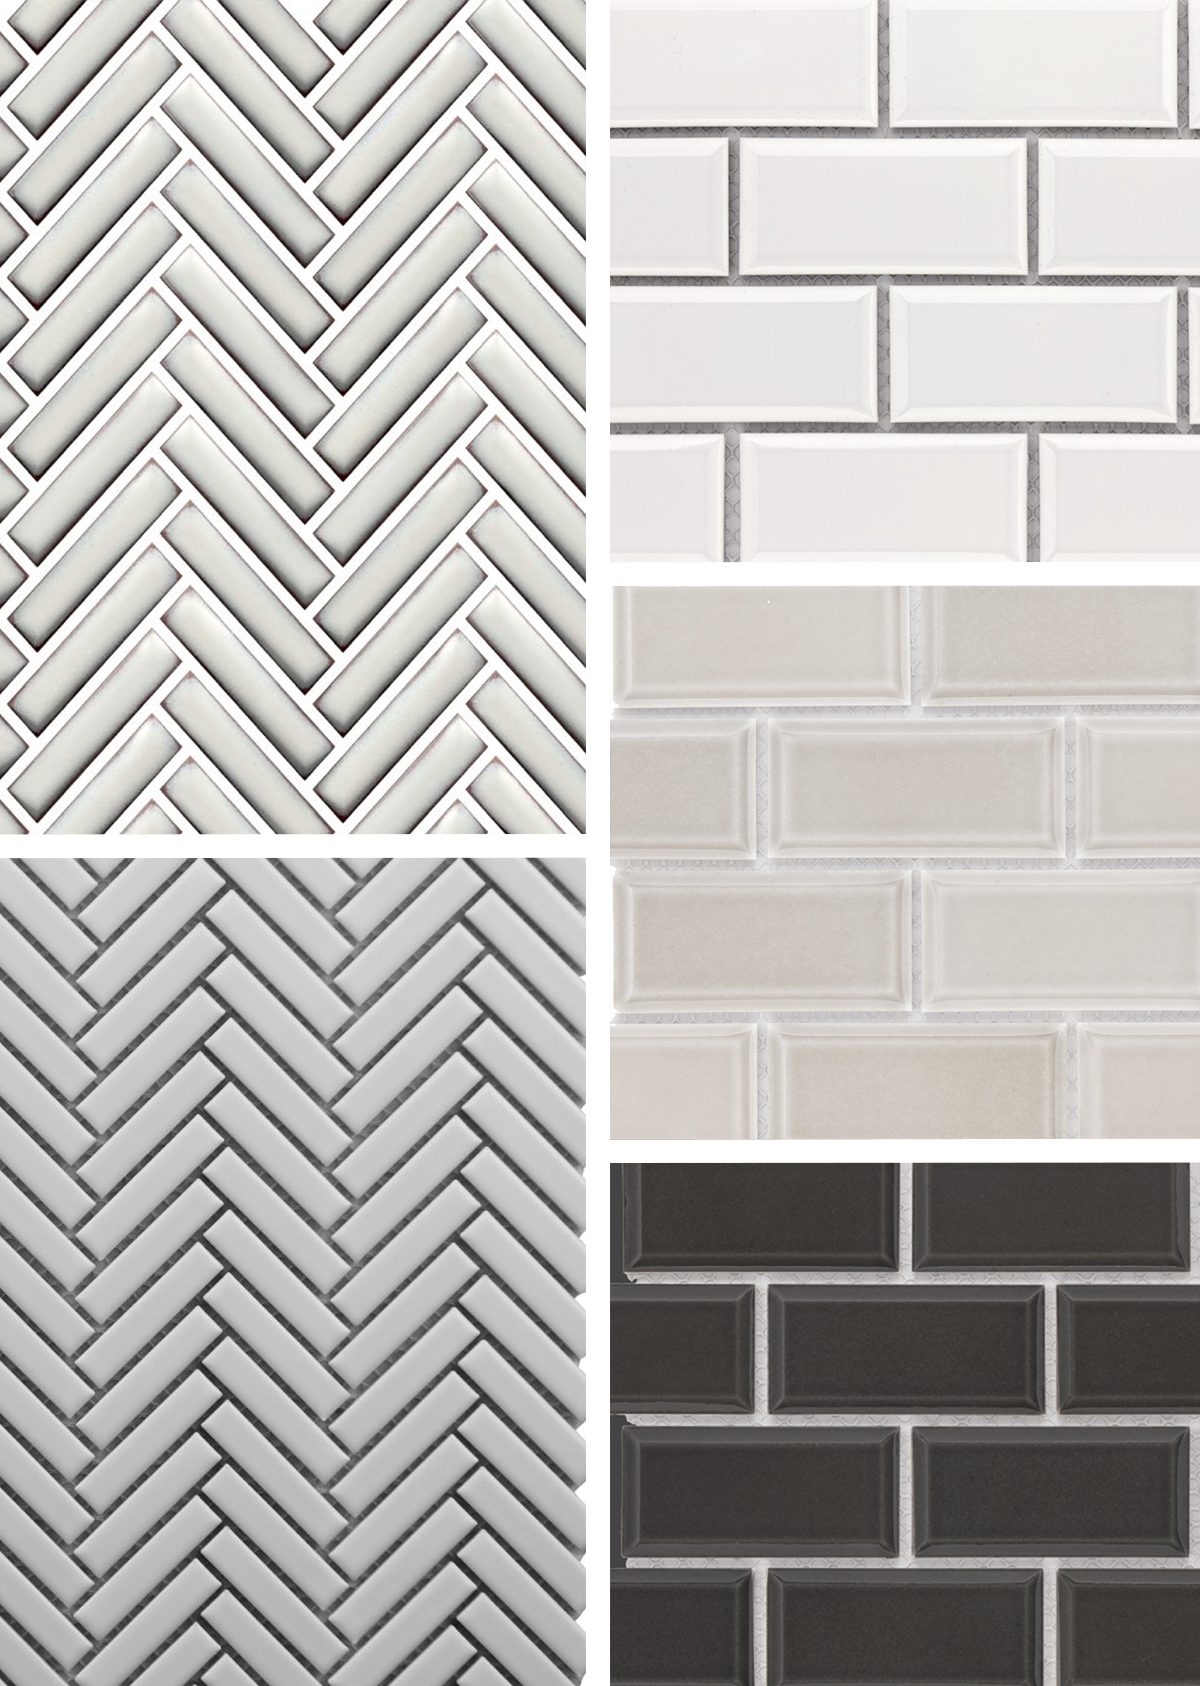 Roca CC Mosaics + Glazed Porcelain Tile for Backsplashes & Shower Walls Image